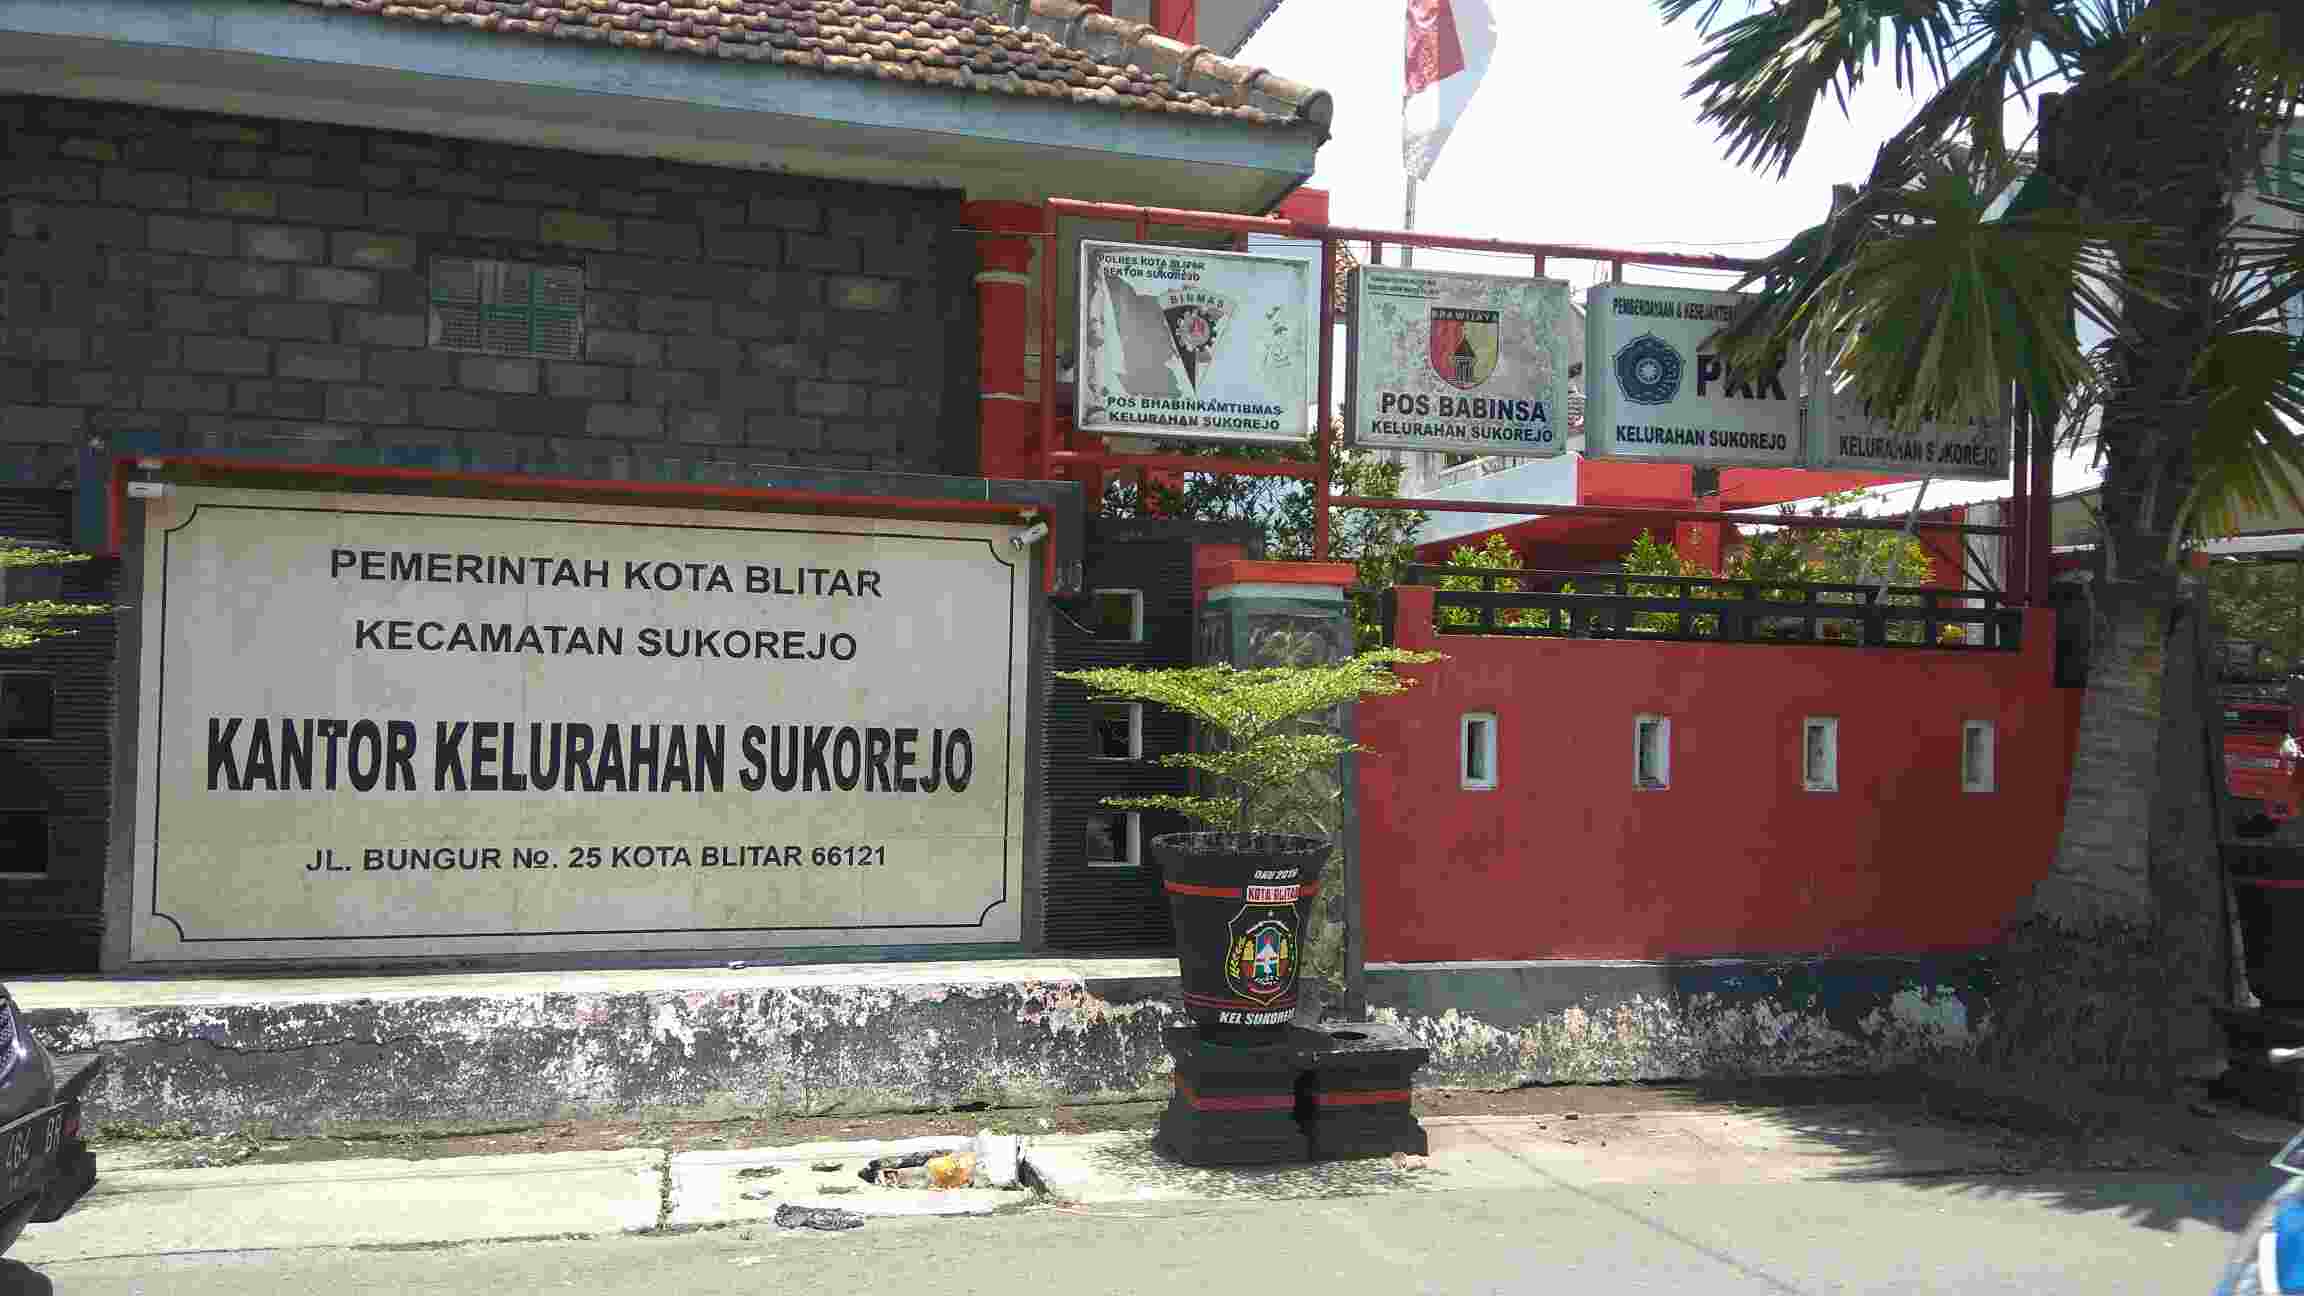 Kelurahan Sukorejo Kecamatan Sukorejo Kota Blitar